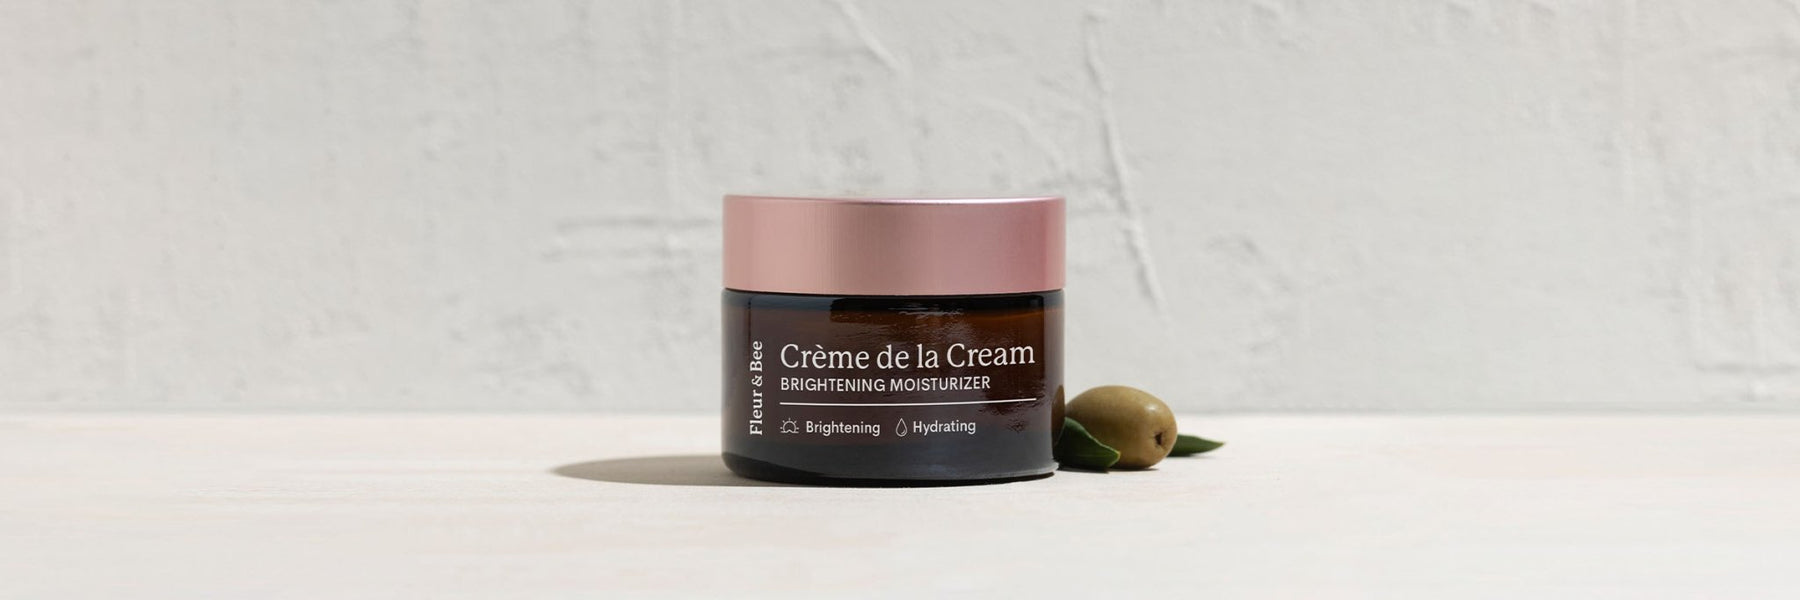 Crème de la Cream: Natural Moisturizer by Fleur & Bee